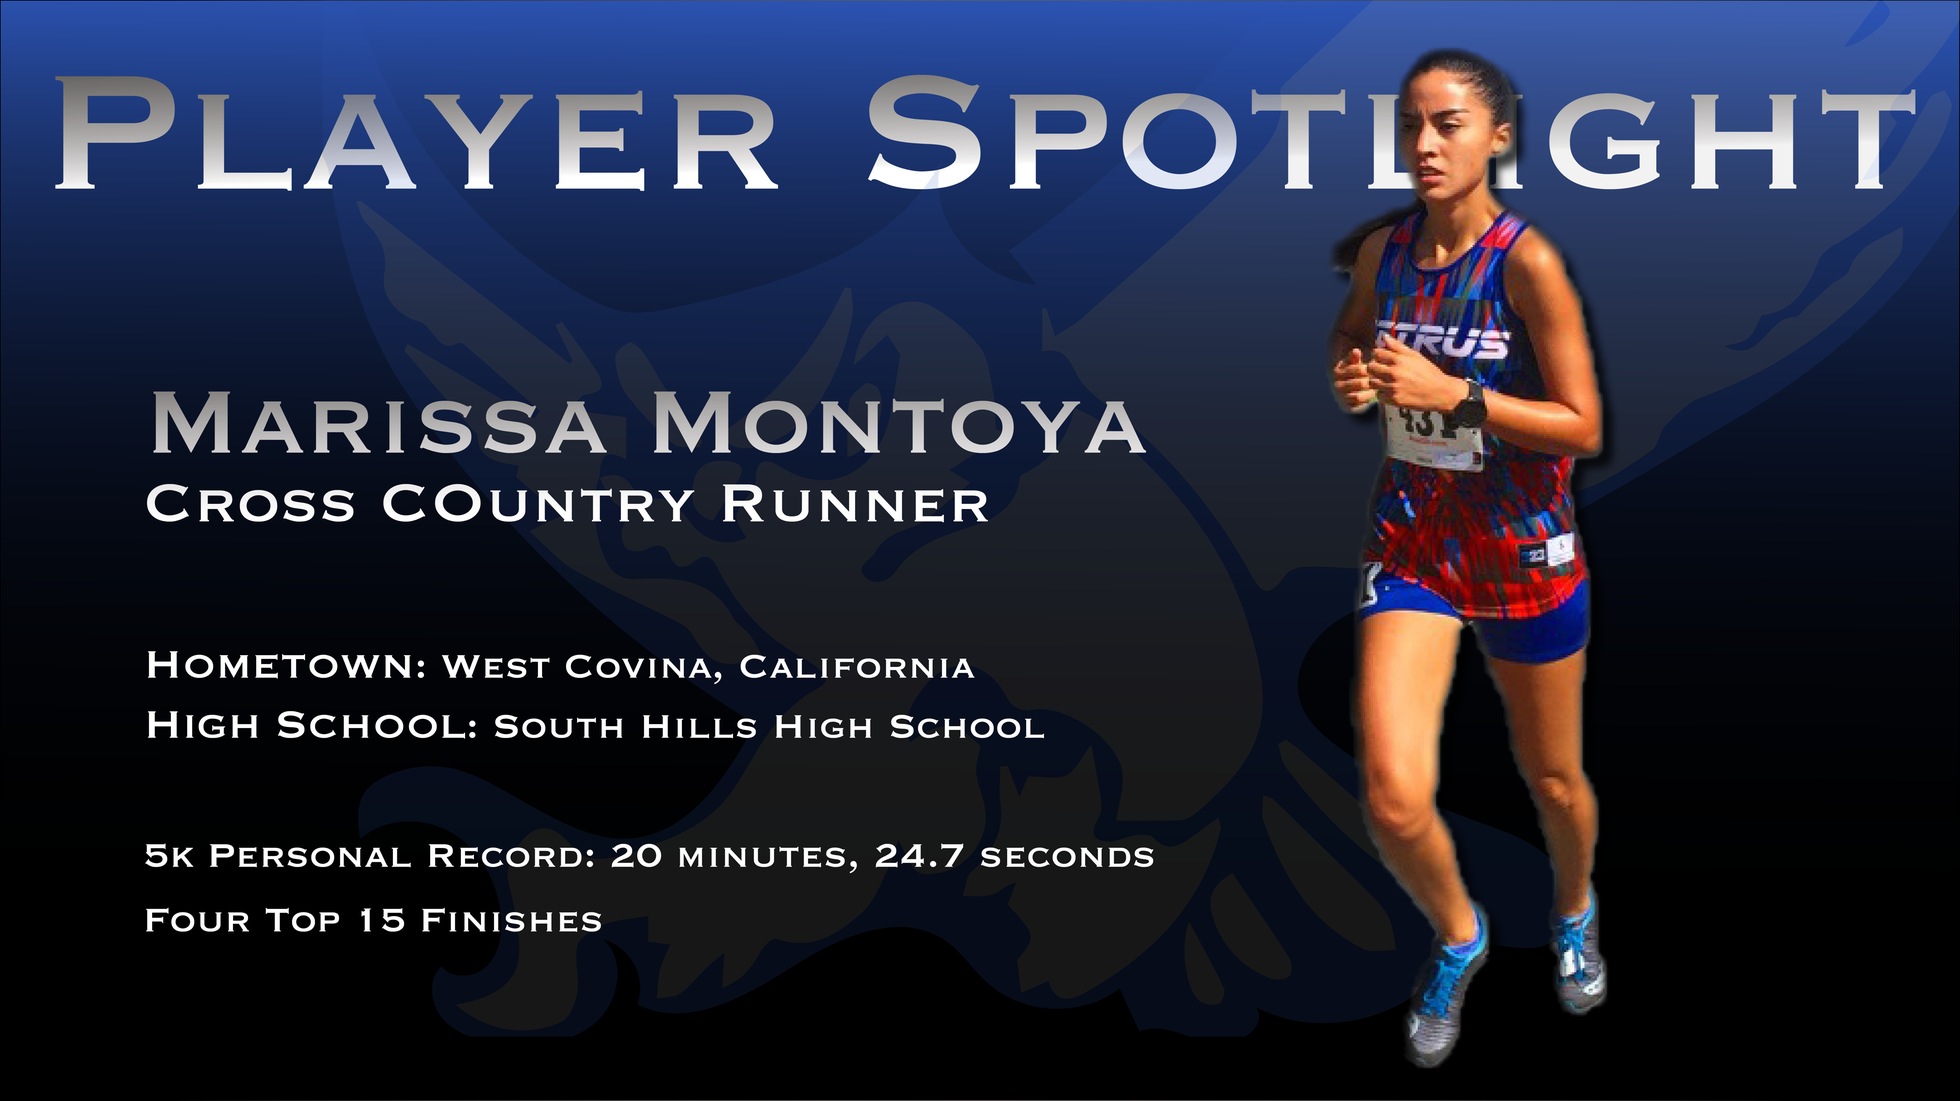 Player Spotlight: Marissa Montoya